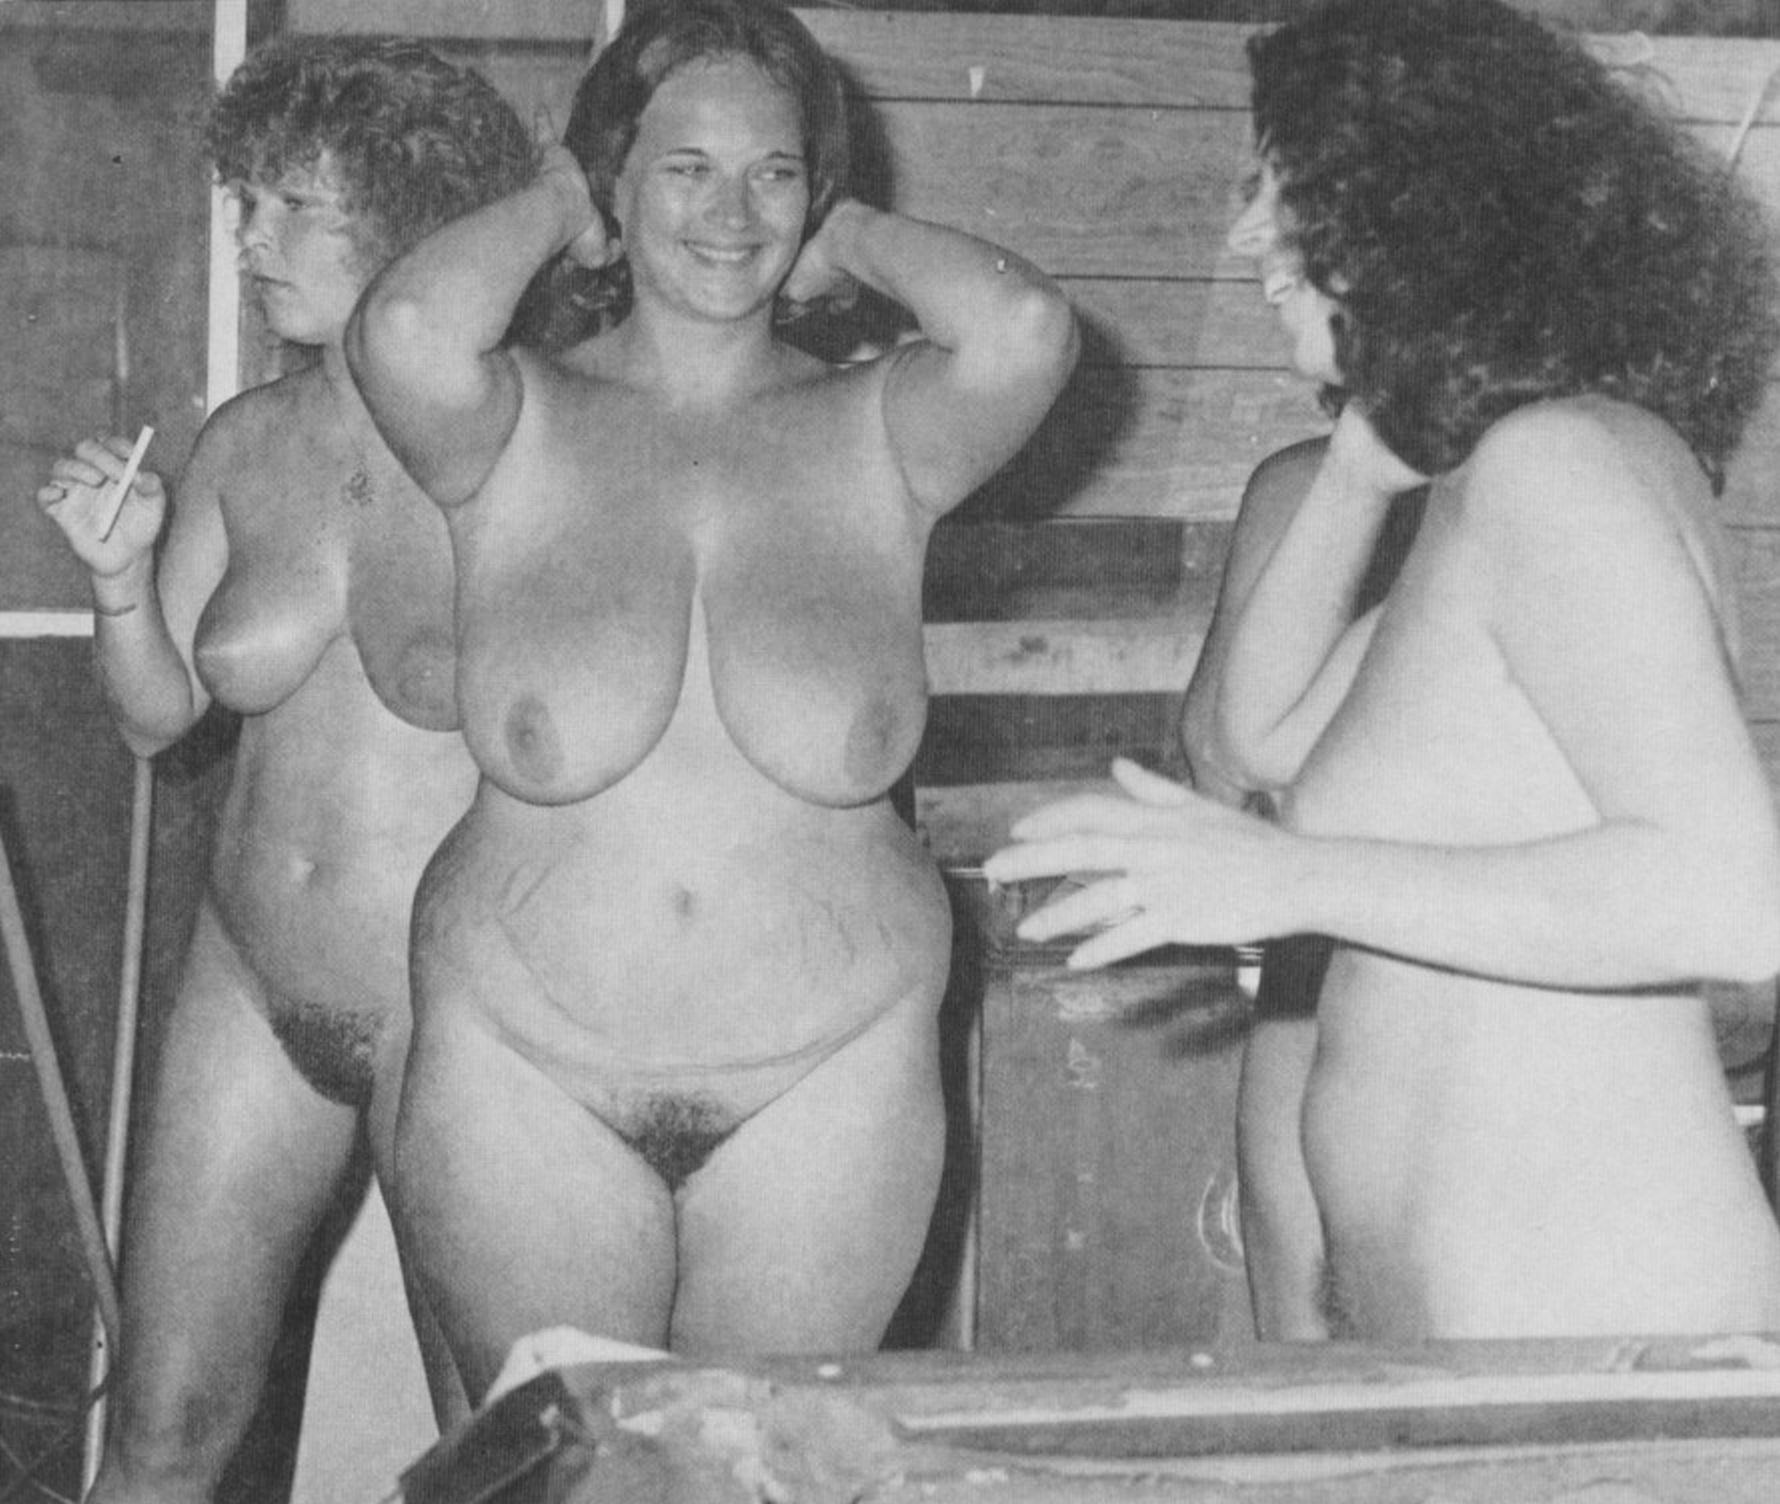 женская общественная баня ню (65 фото)